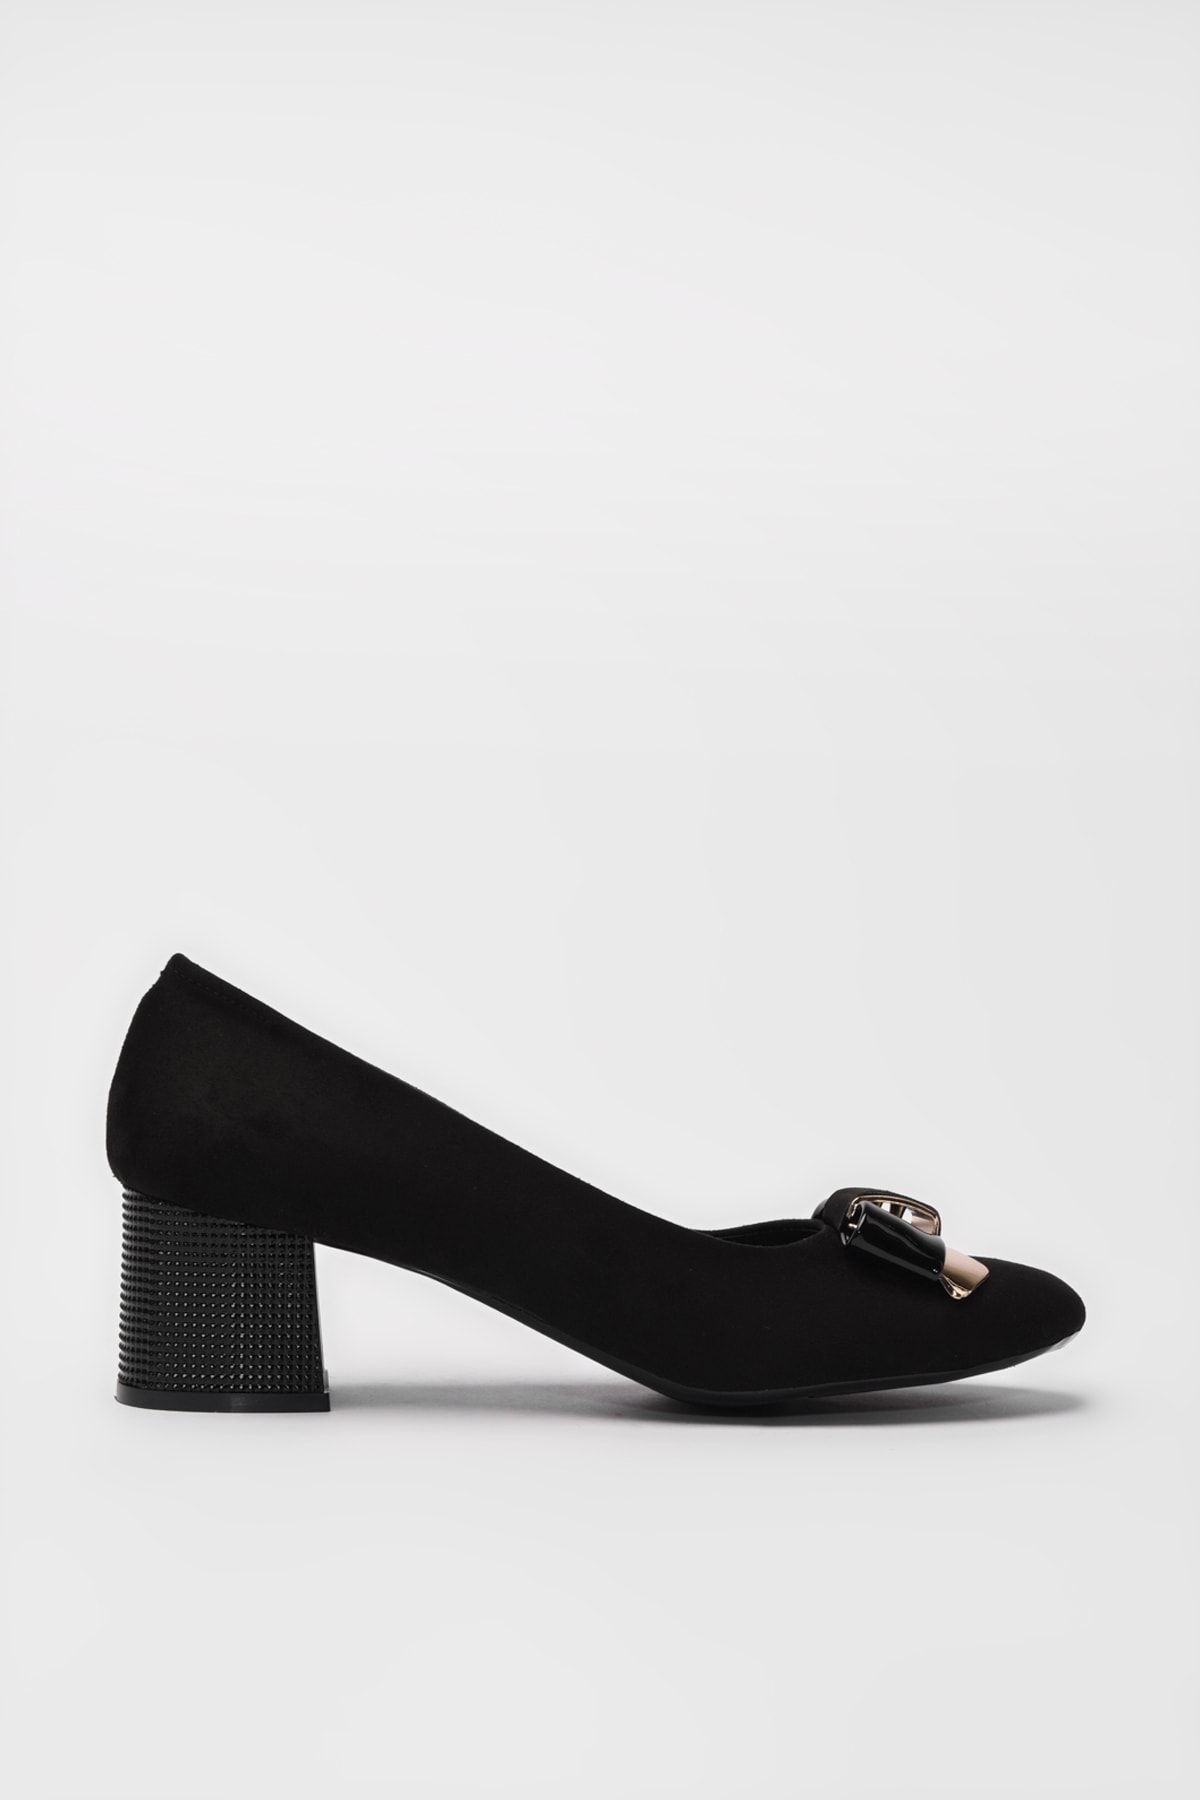 Yaya by Hotiç Siyah Kadın Klasik Topuklu Ayakkabı 01AYY188030A100